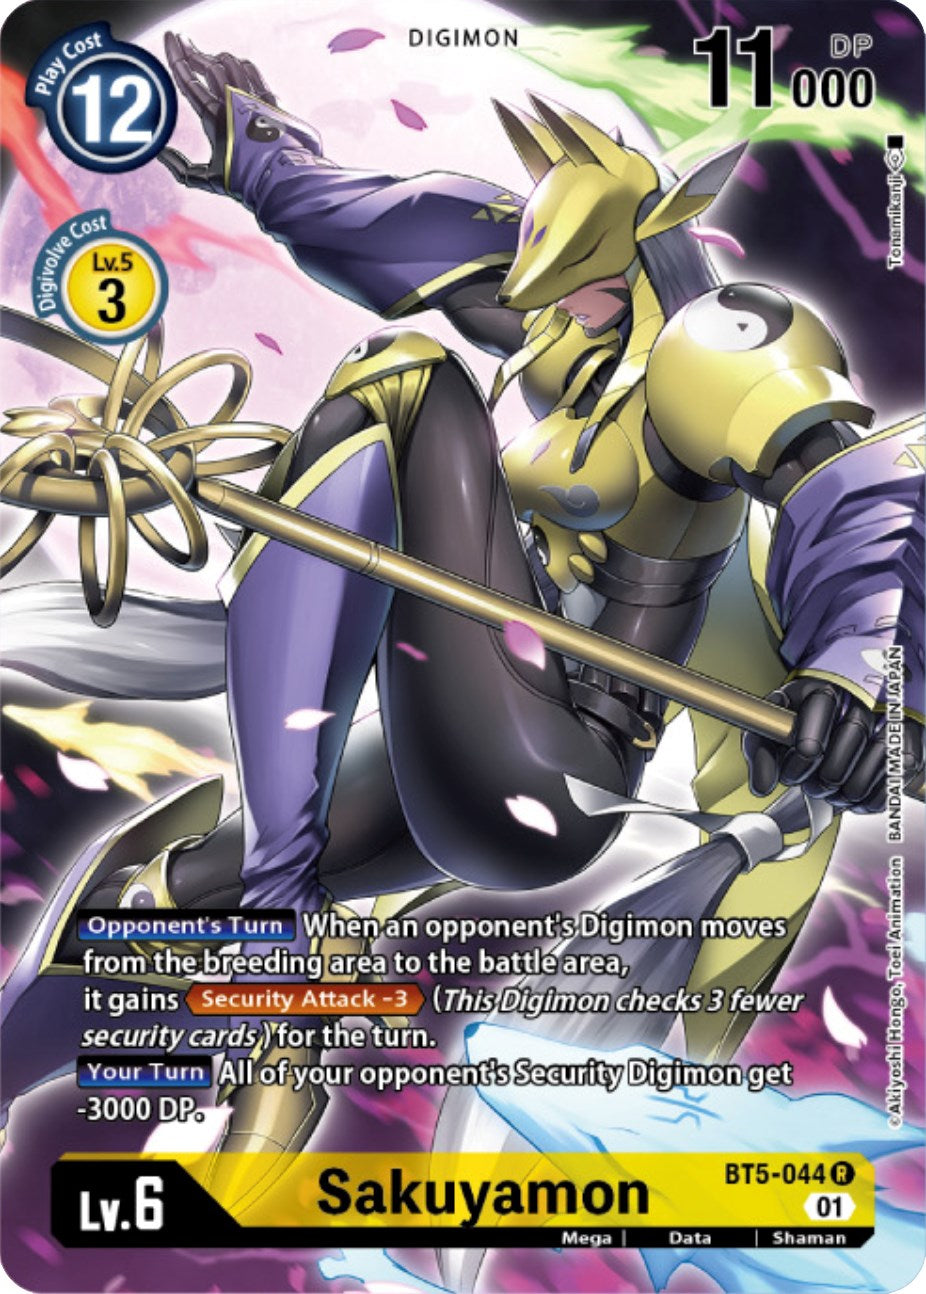 Sakuyamon [BT5-044] (Digimon Card Game Deck Box Set) [Battle of Omni Promos] | Black Swamp Games